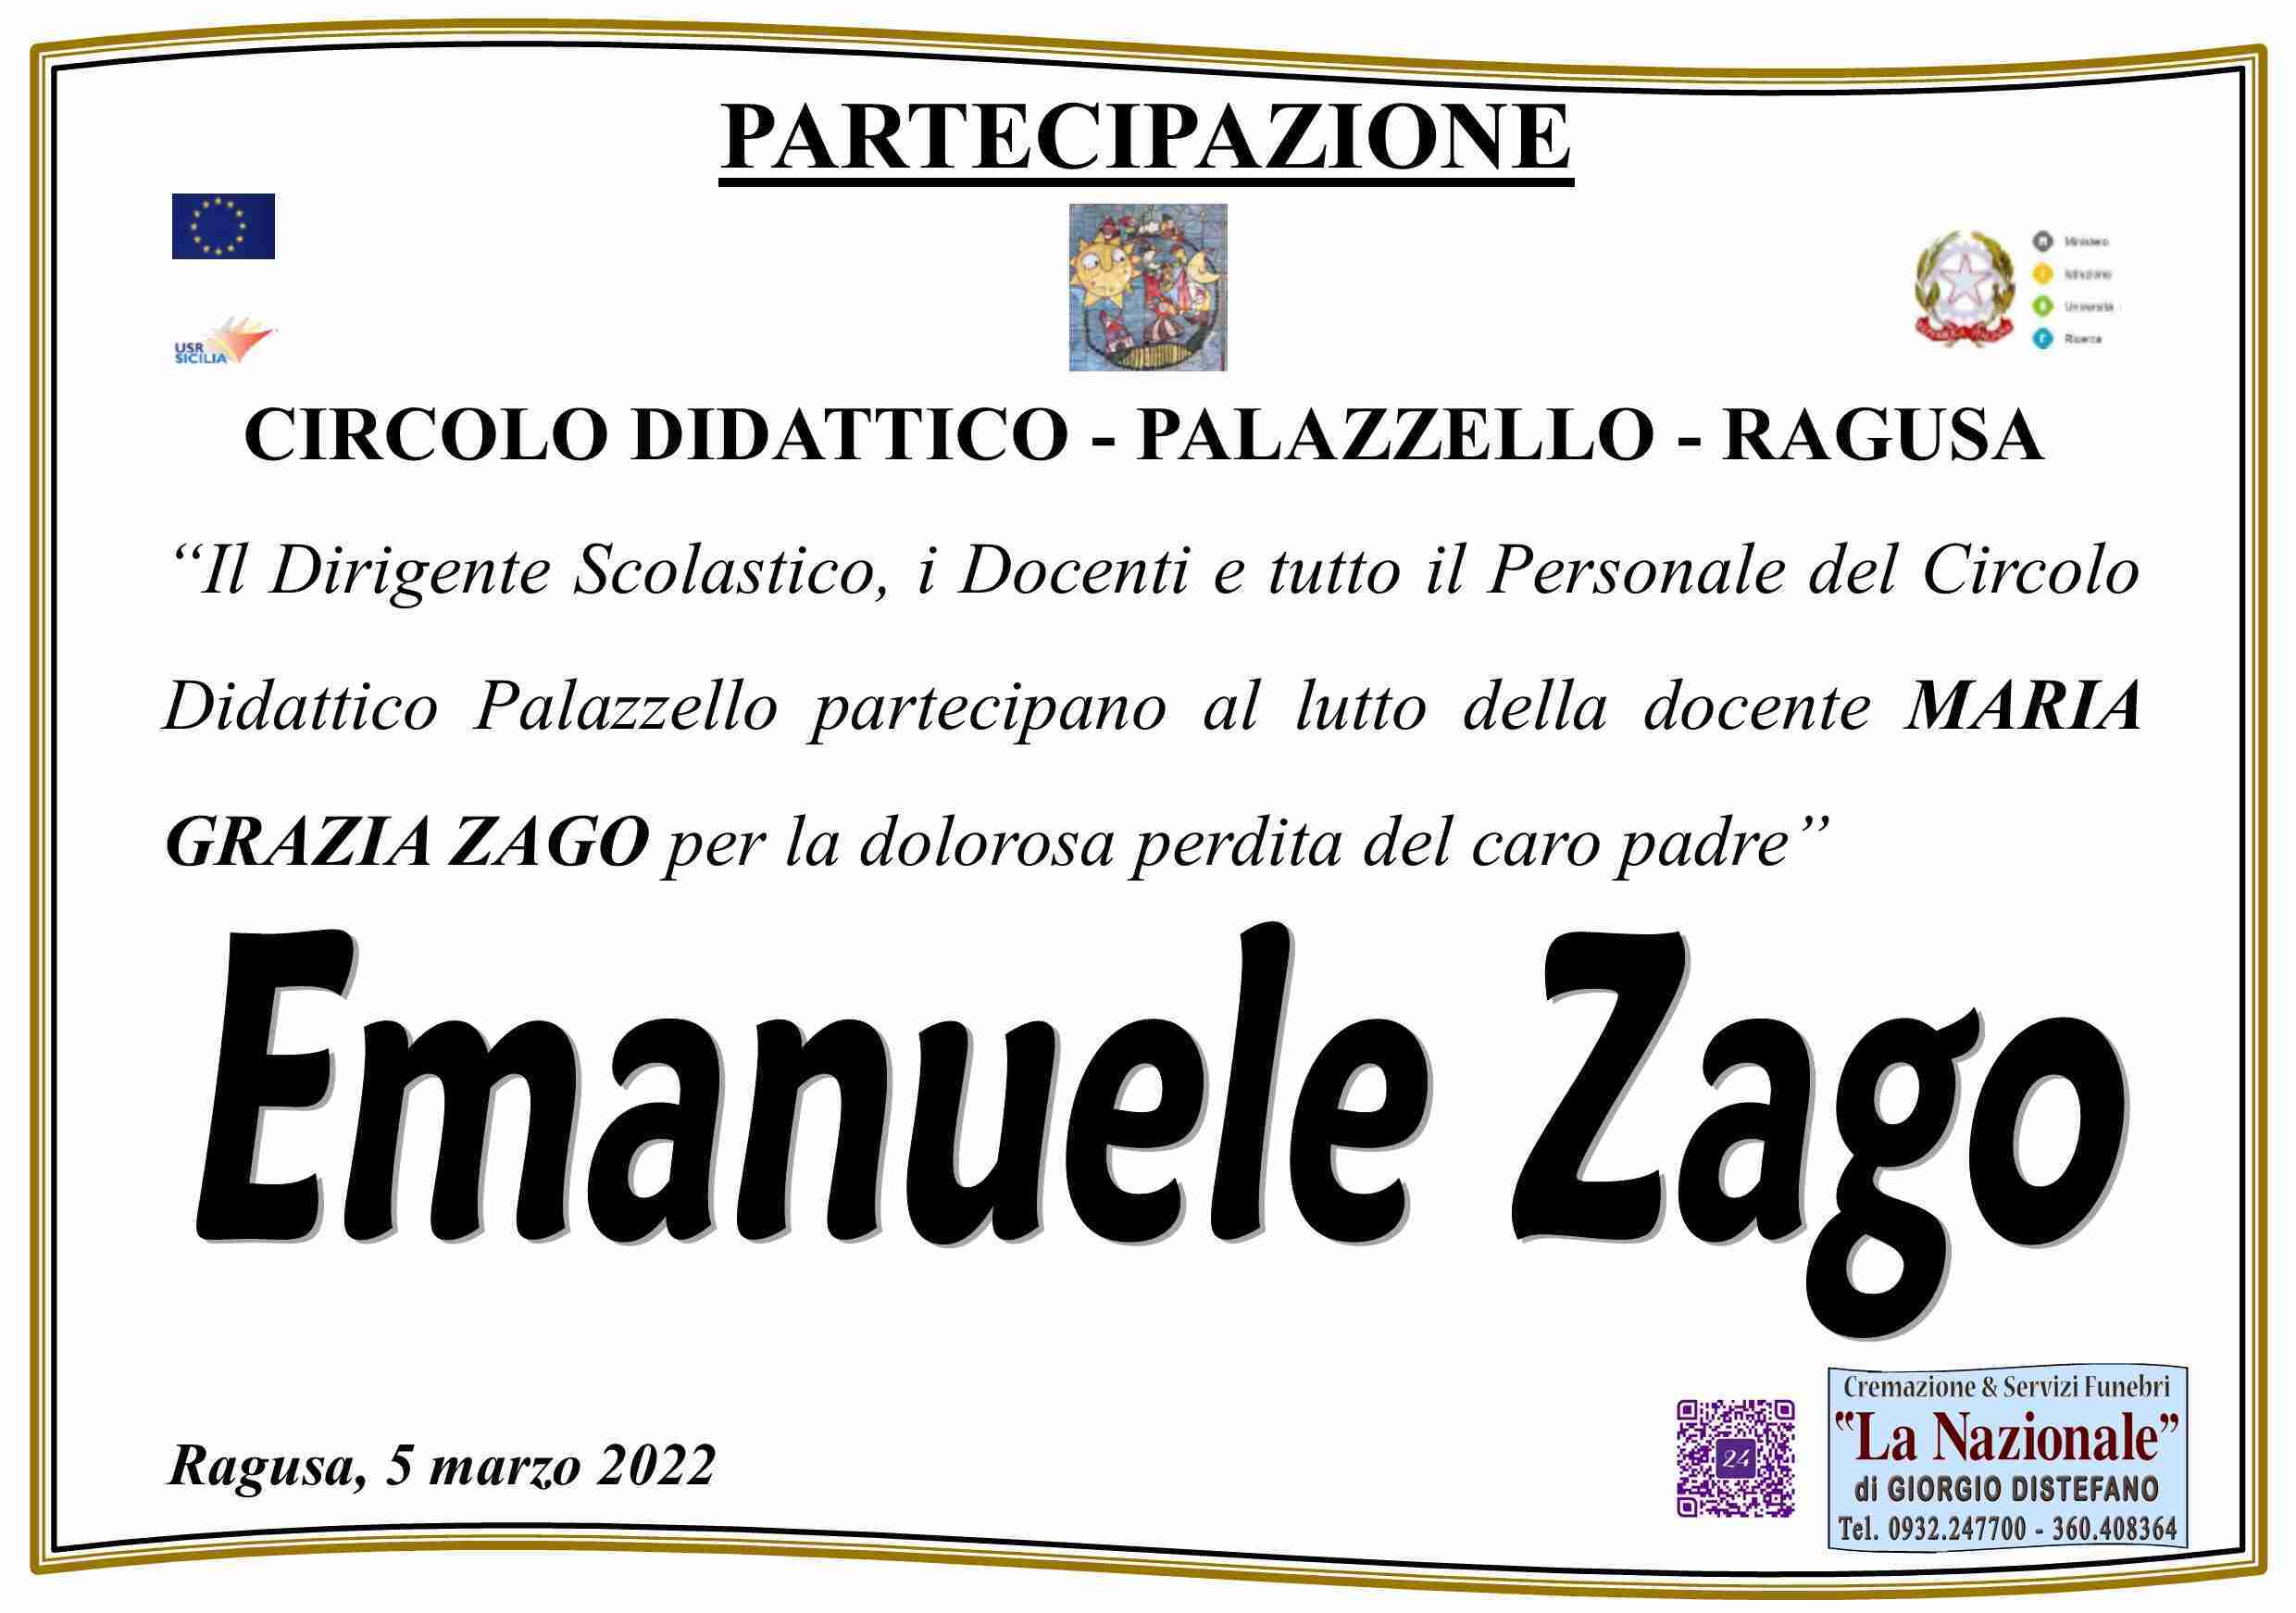 Emanuele Zago